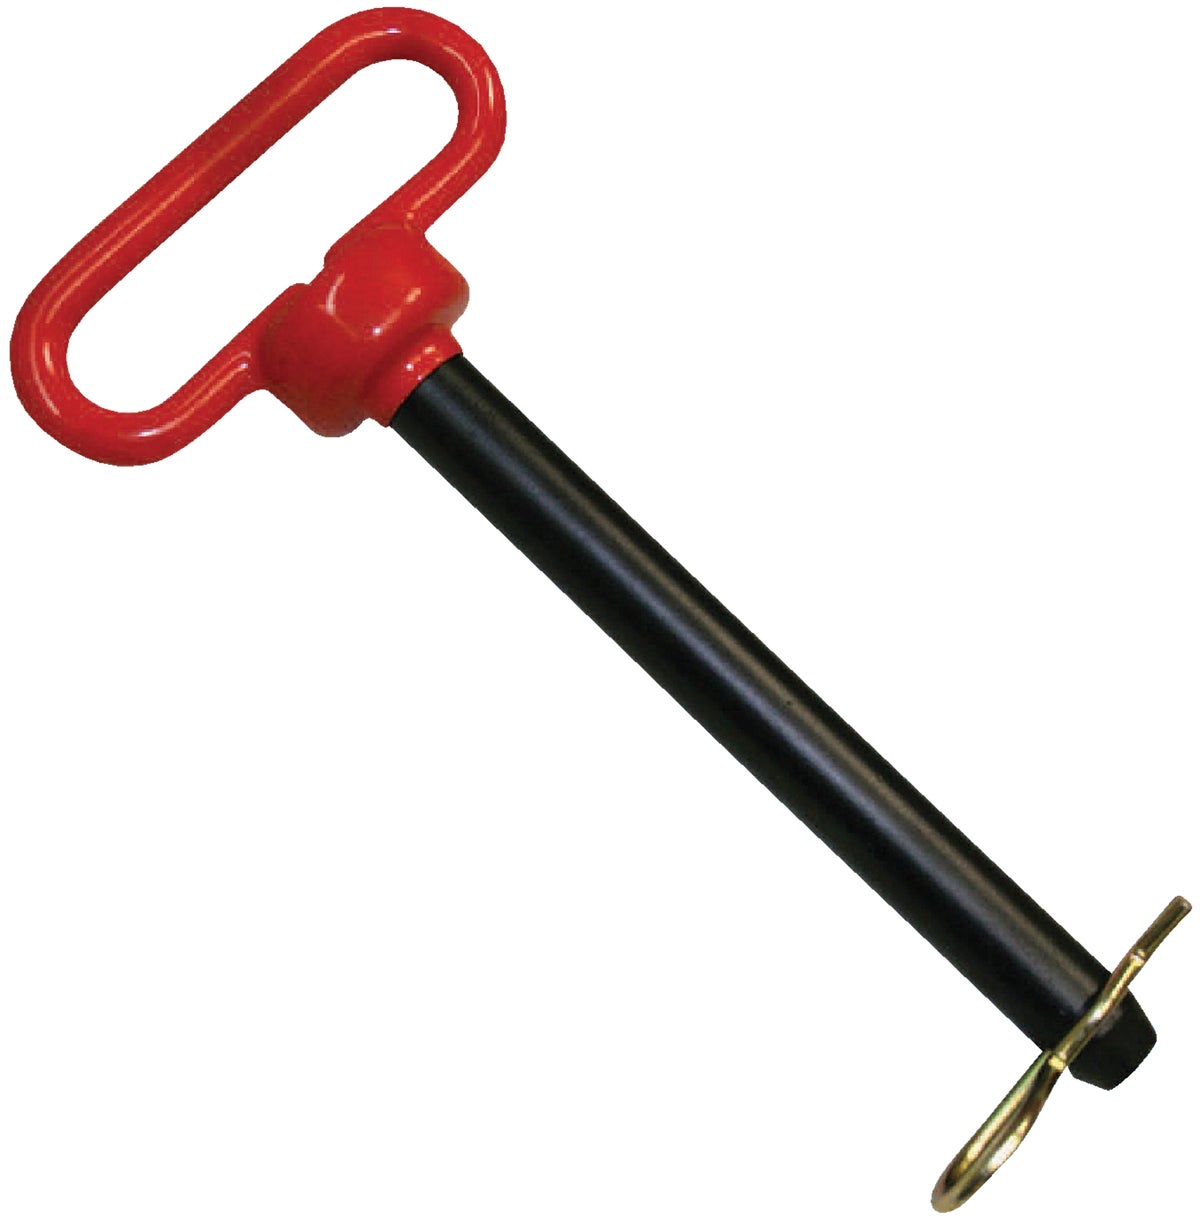 Farmex/speeco 01502 red Head Hitch Pin 5/8 X 5-1/2 